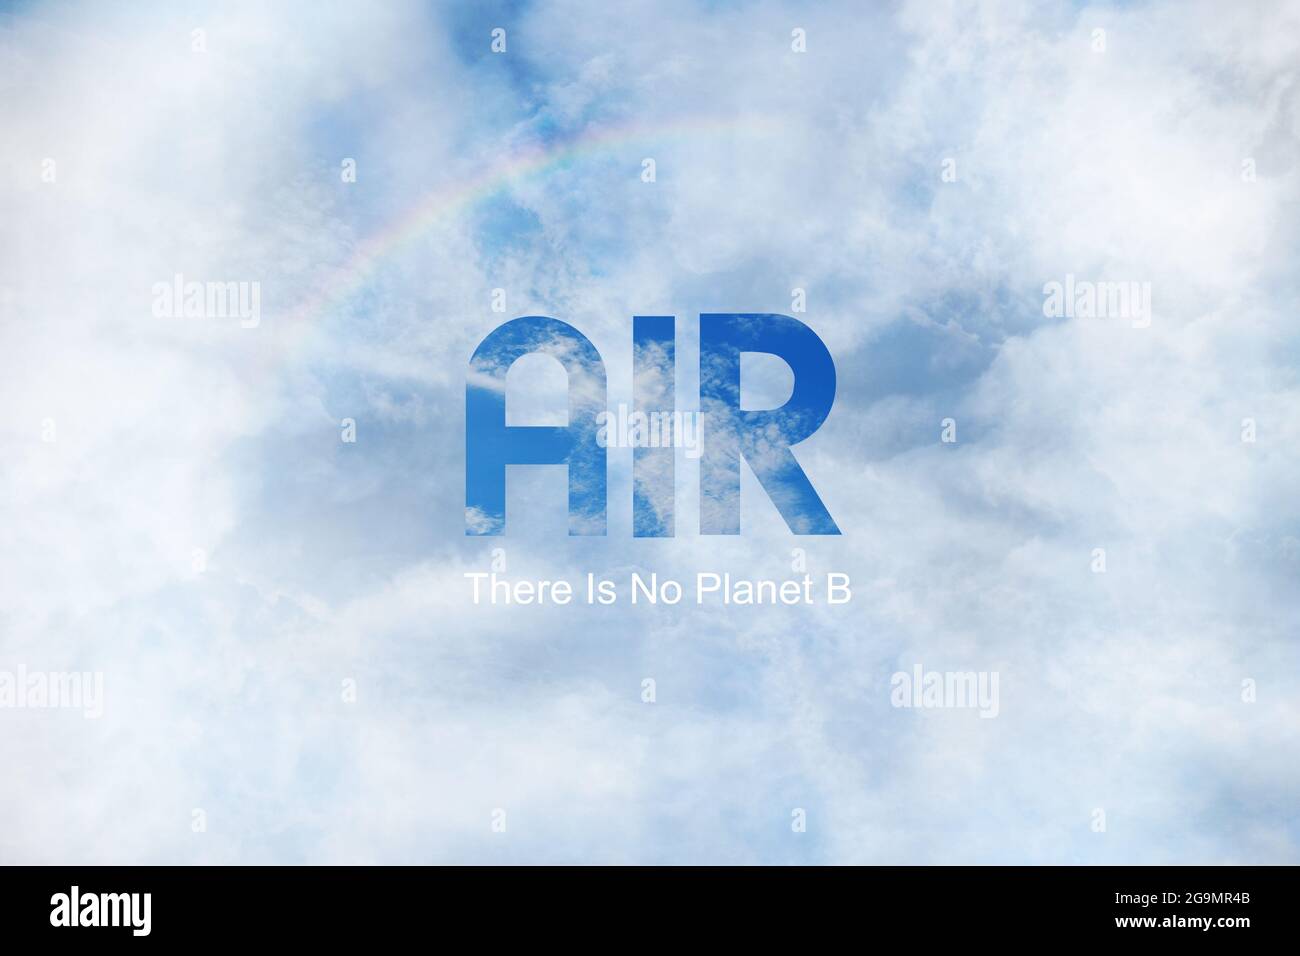 Inschrift Text Luft, Es gibt keinen Planeten B, auf einem abstrakten blau weißen Himmel Hintergrundtextur, Ökologie Konzept Stockfoto